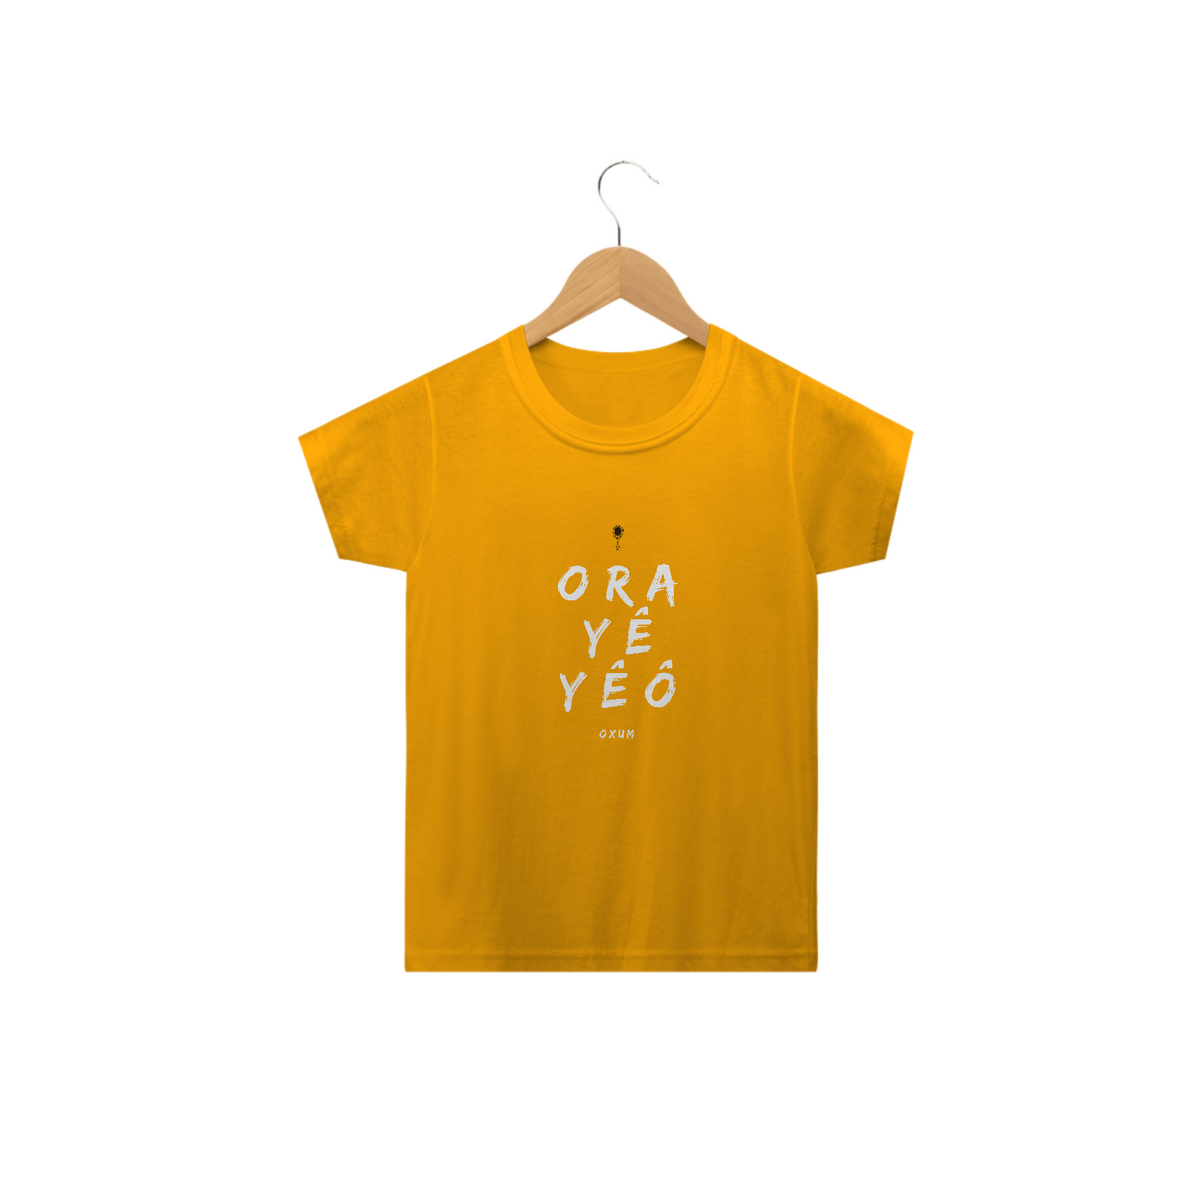 Nome do produto: Camiseta Infantil Osun Oxum - Saudação Òóré Yéyé Osun 100% Algodão Fio 24.1, 145g costura simples e gola ribana